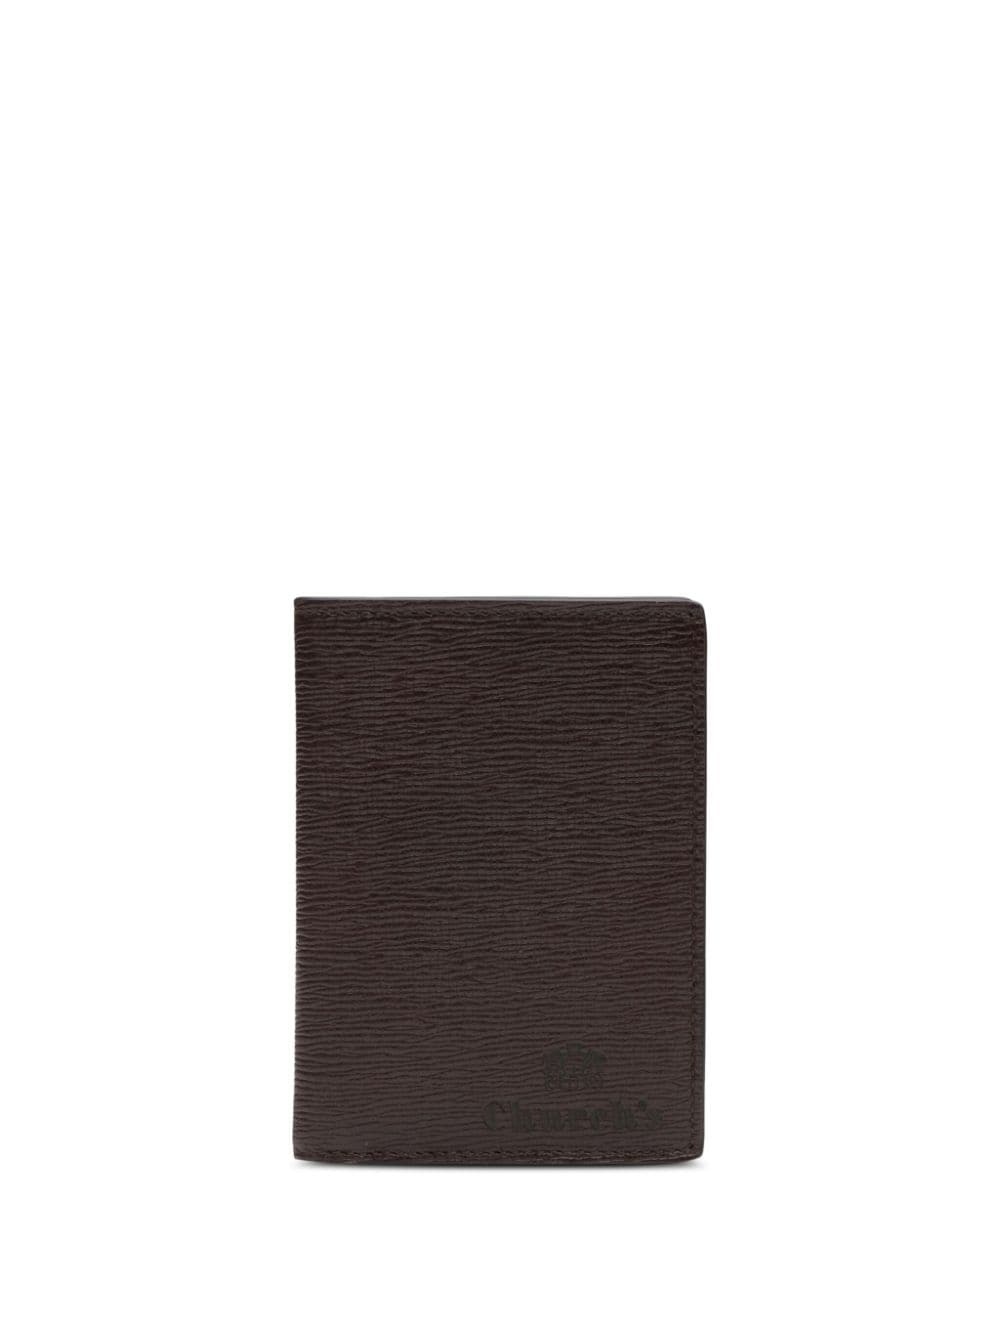 St James bi-fold leather card holder - 1